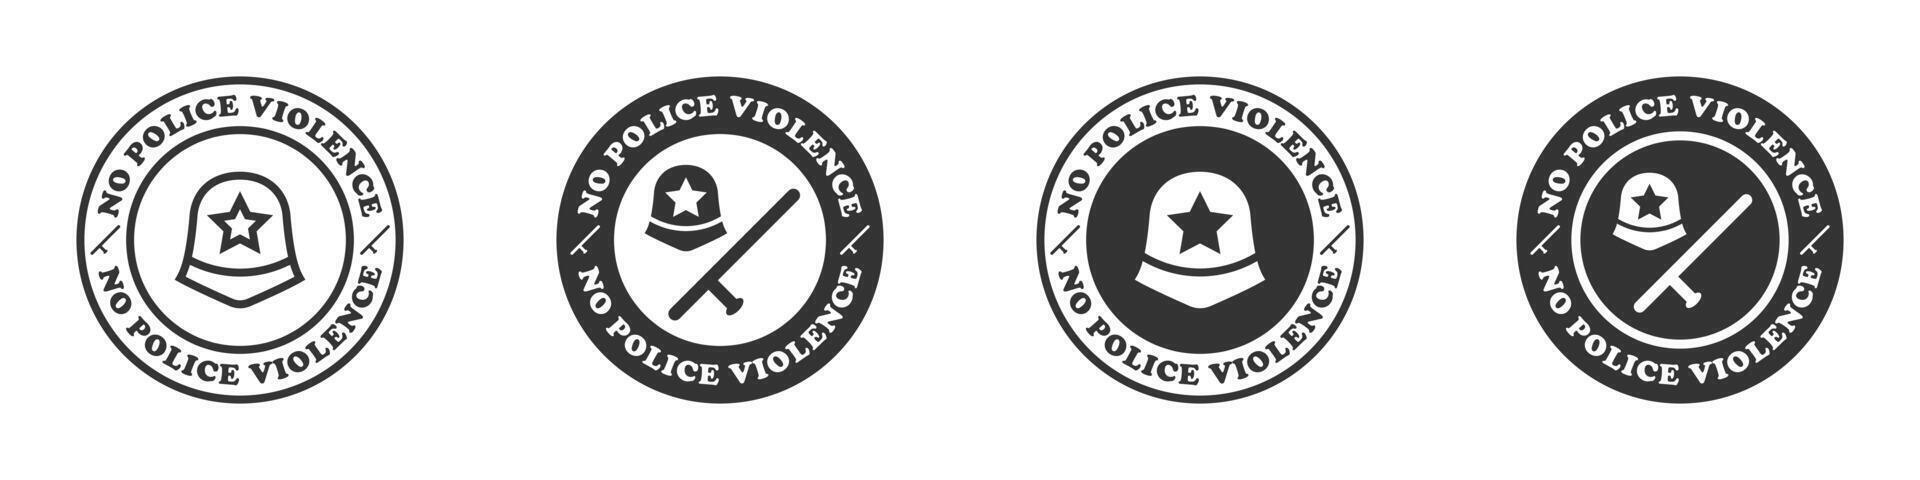 Nein Polizei Gewalt Symbol. halt Polizei Brutalität. Vektor Illustration.